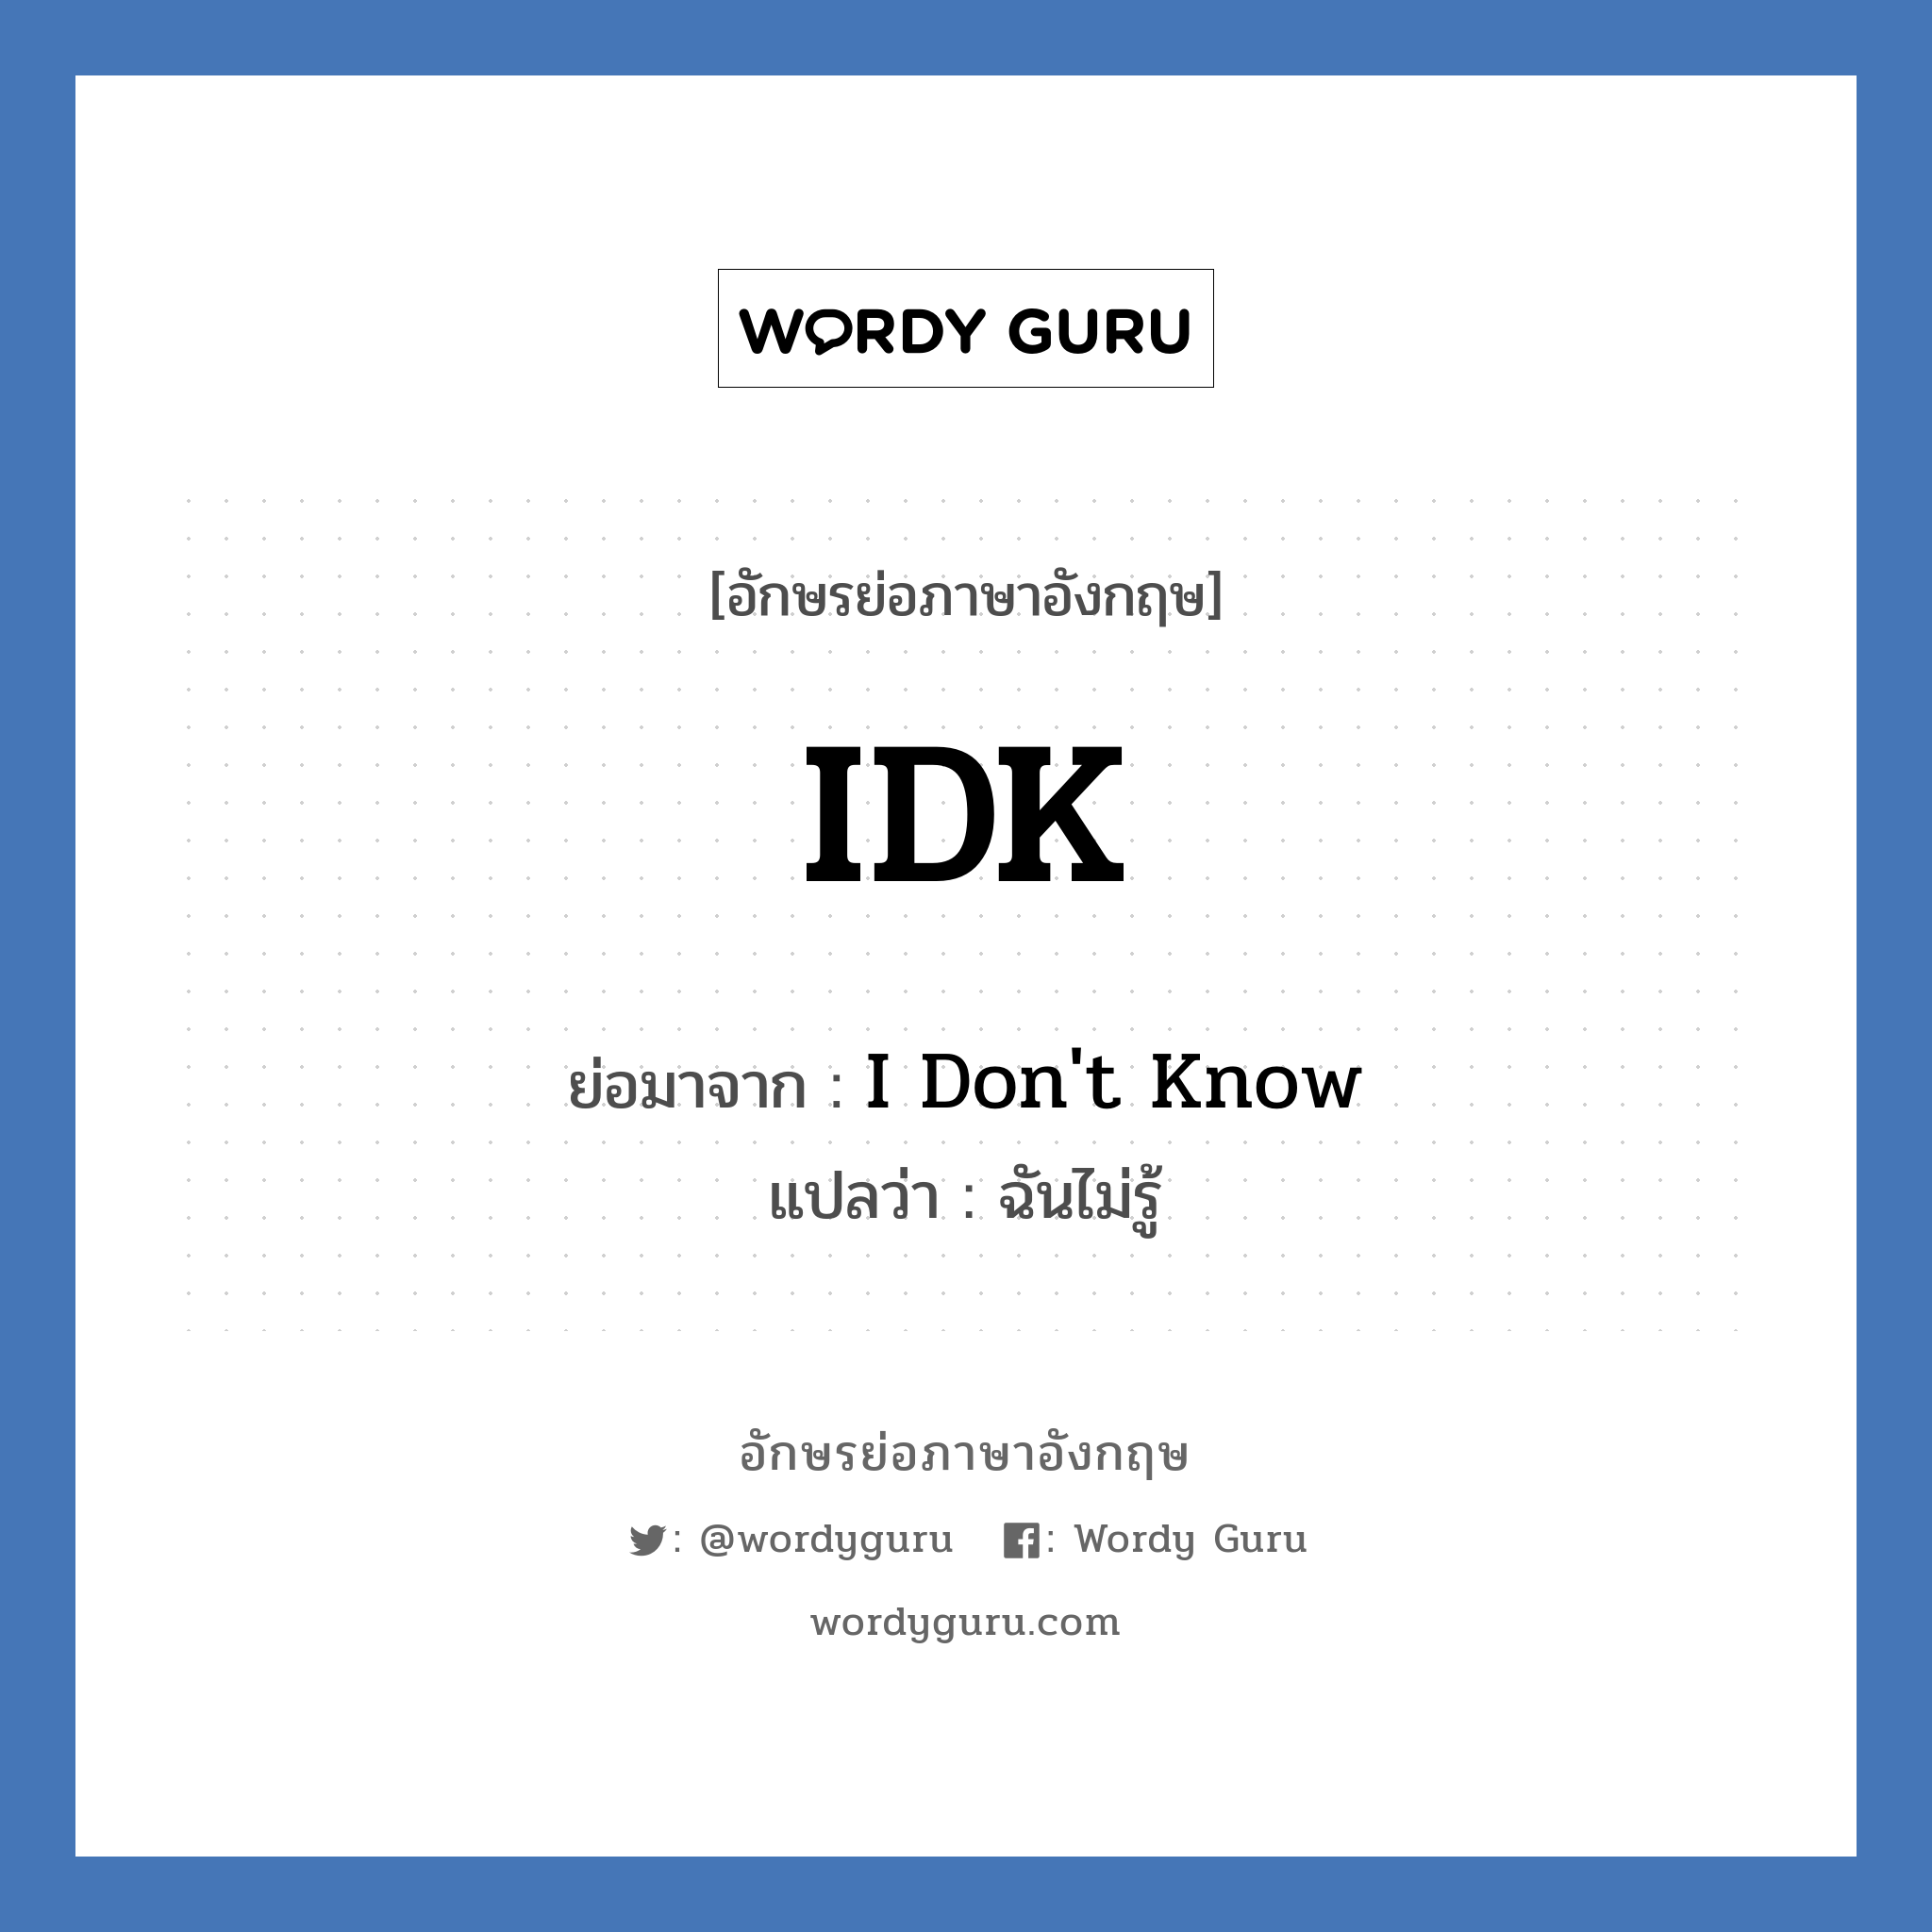 I Don't Know คำย่อคือ? แปลว่า?, อักษรย่อภาษาอังกฤษ I Don't Know ย่อมาจาก IDK แปลว่า ฉันไม่รู้